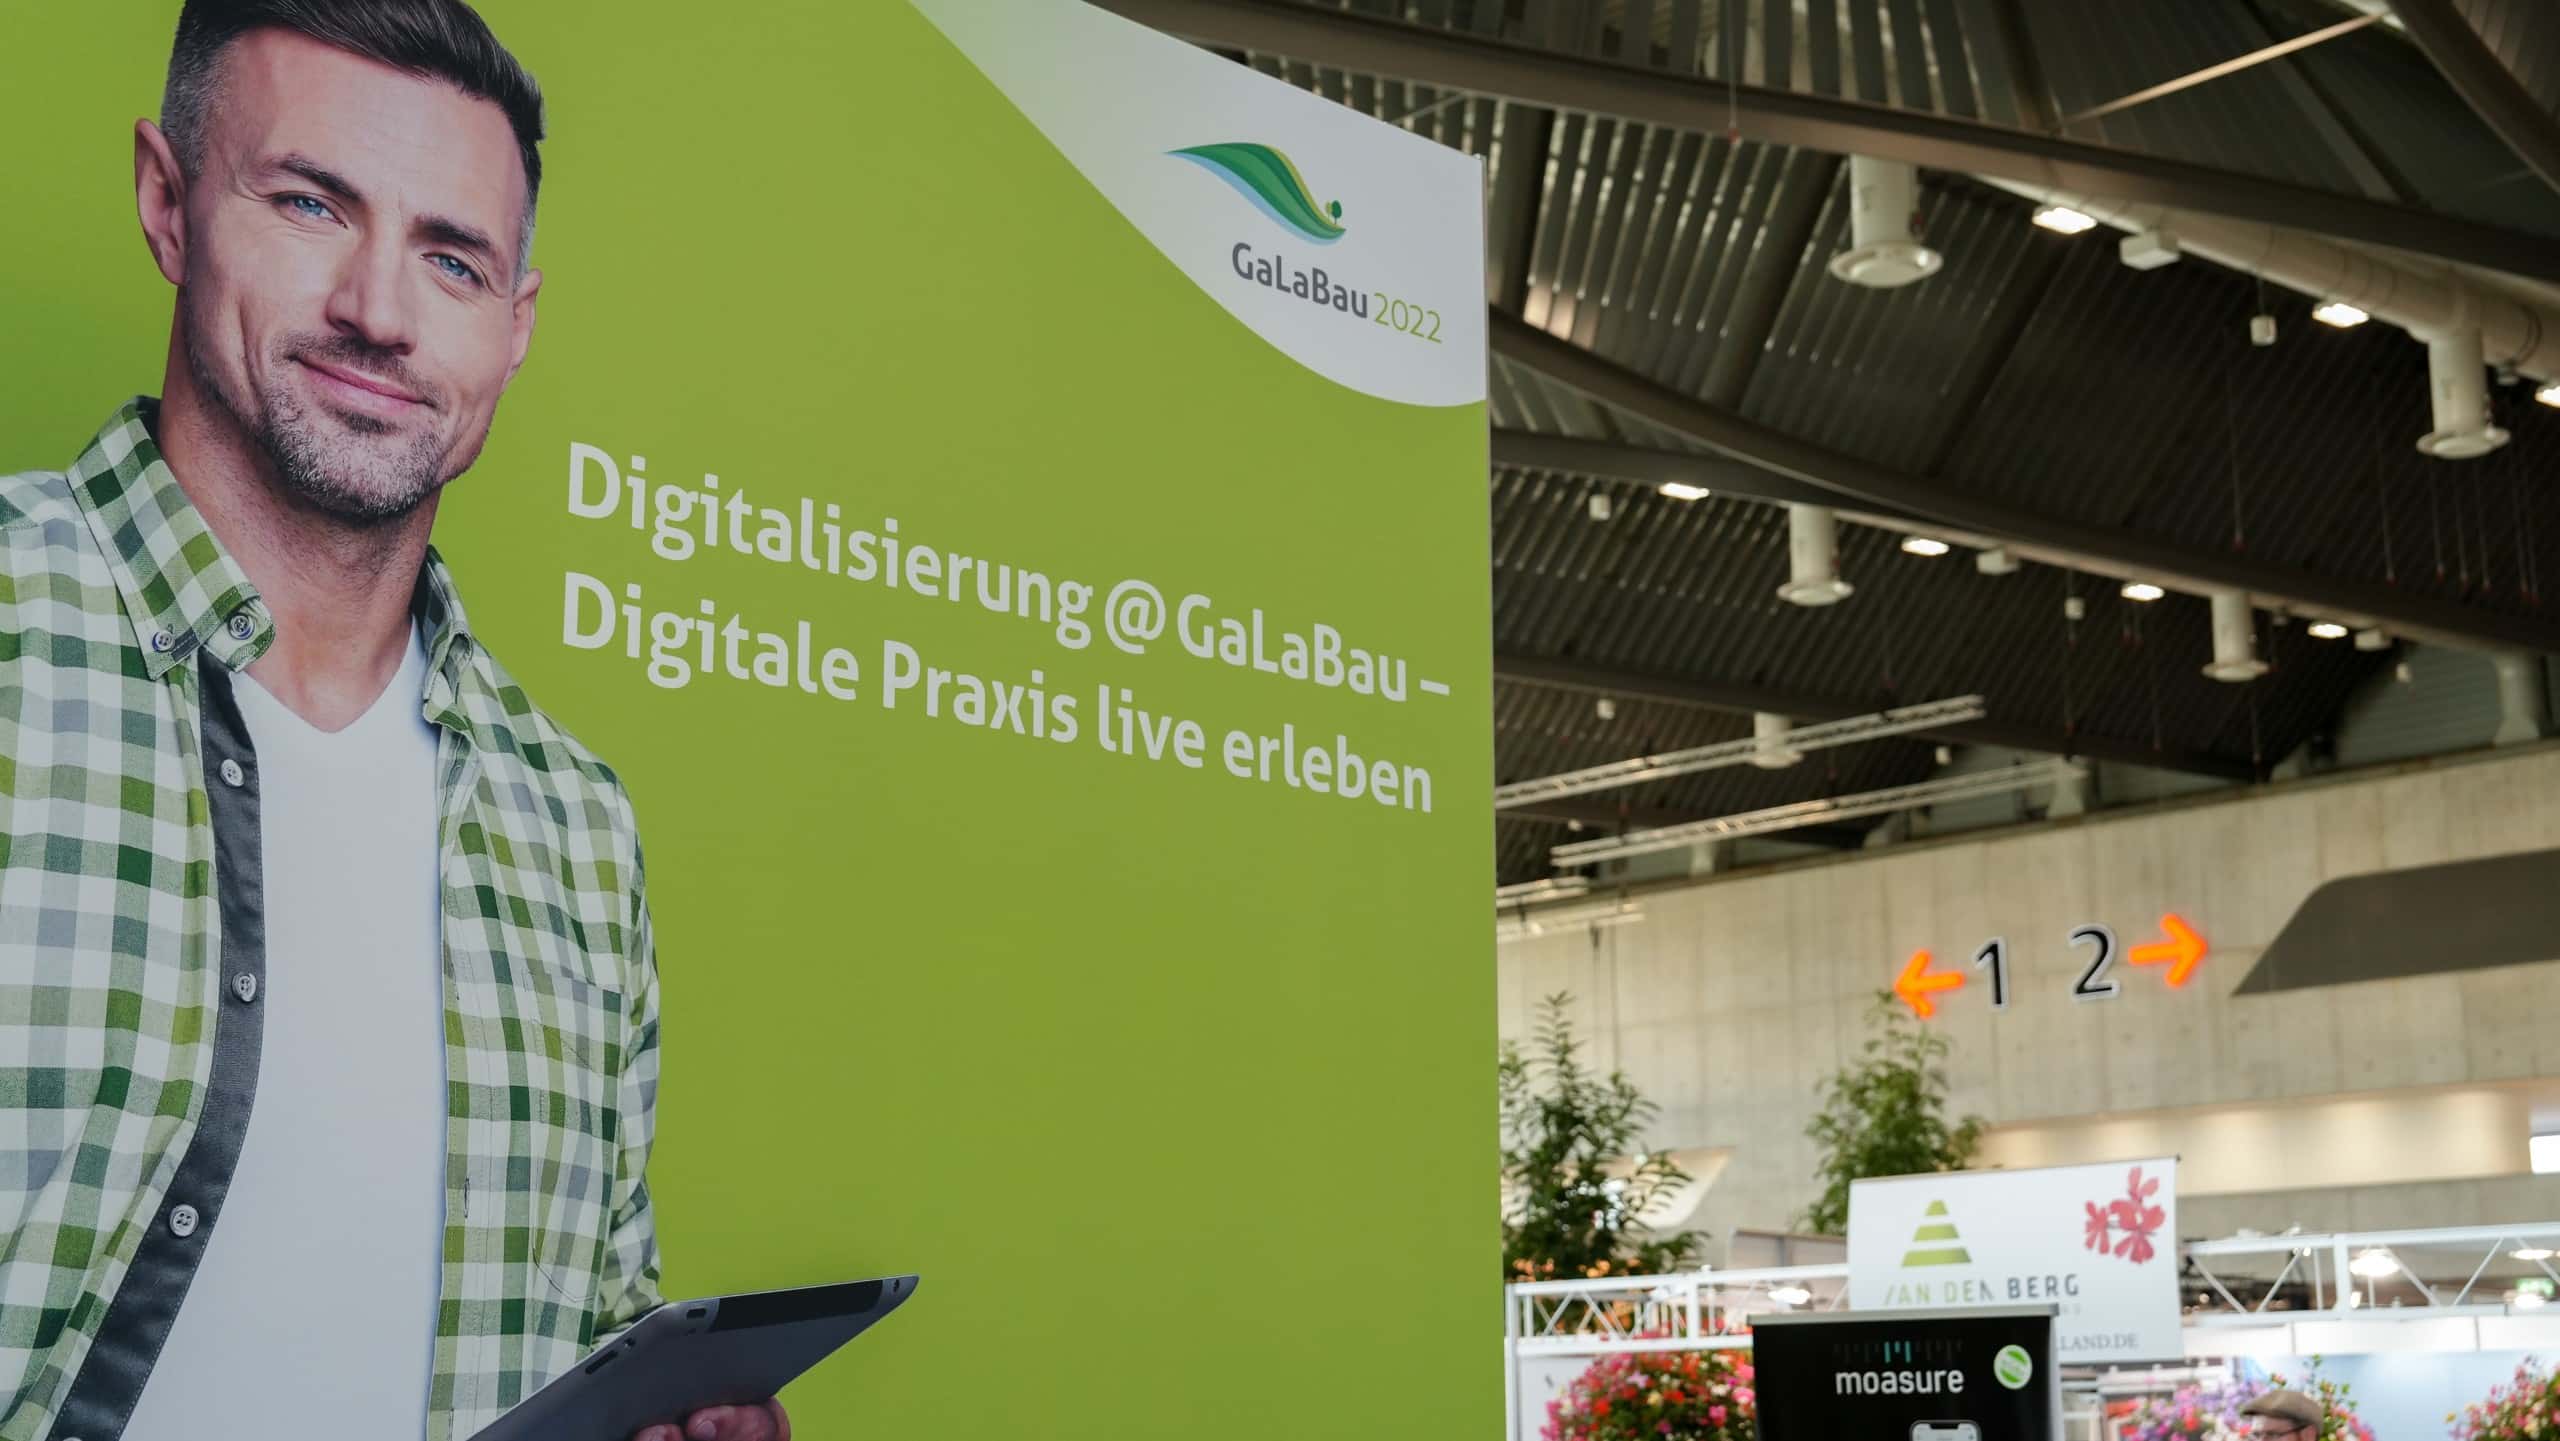 Digitalisierung war ein großes Thema auf der GaLaBau 2022.